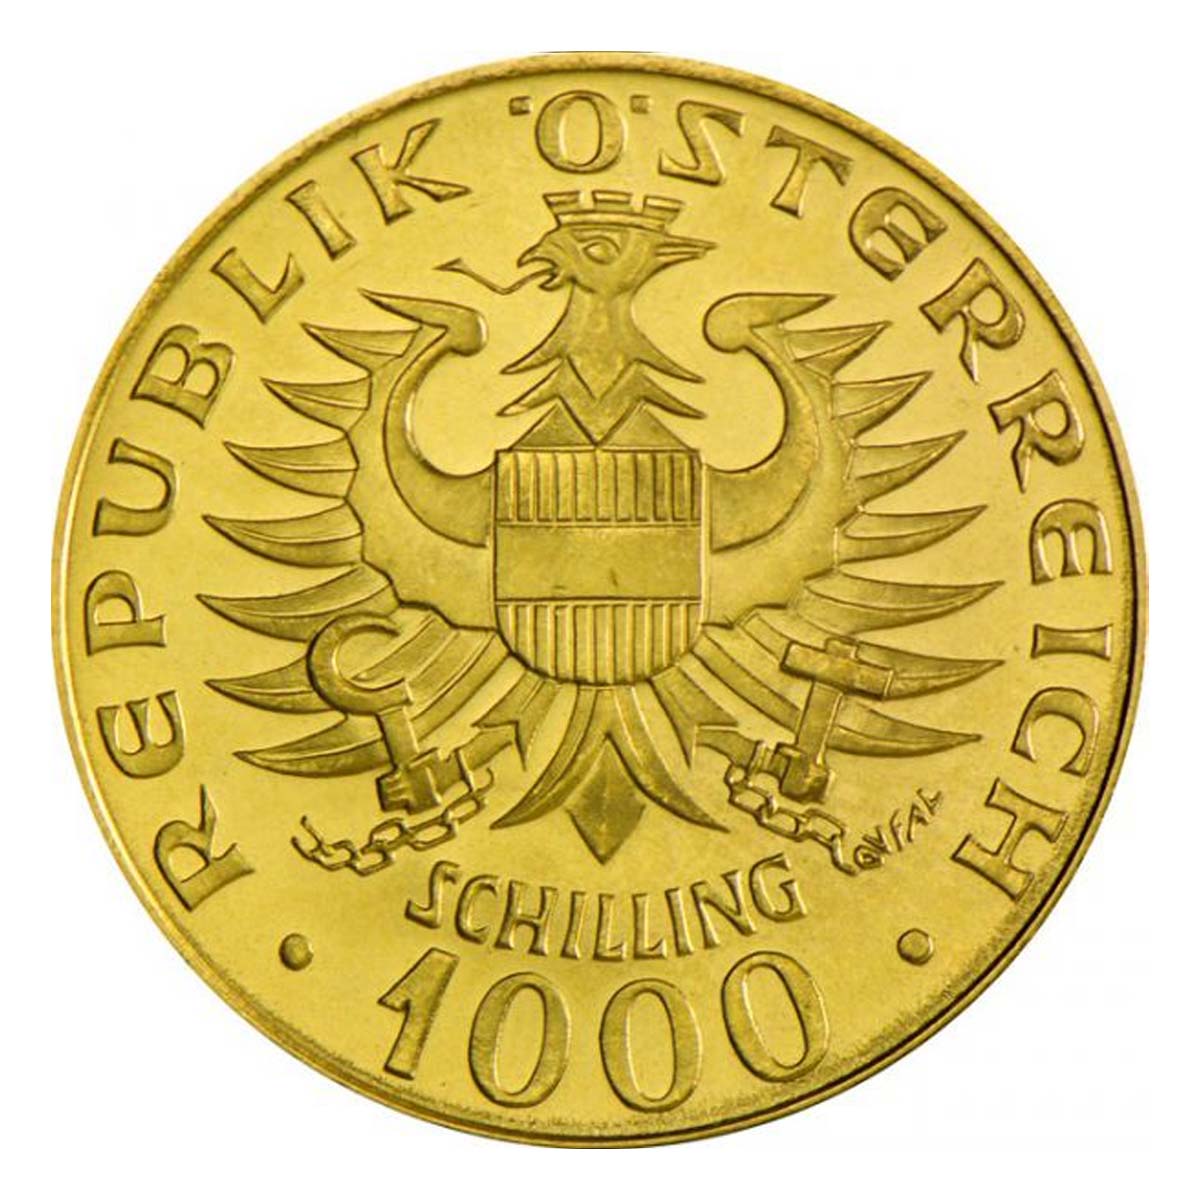 13.5 גרם מטבע זהב - באבנברג 1976 